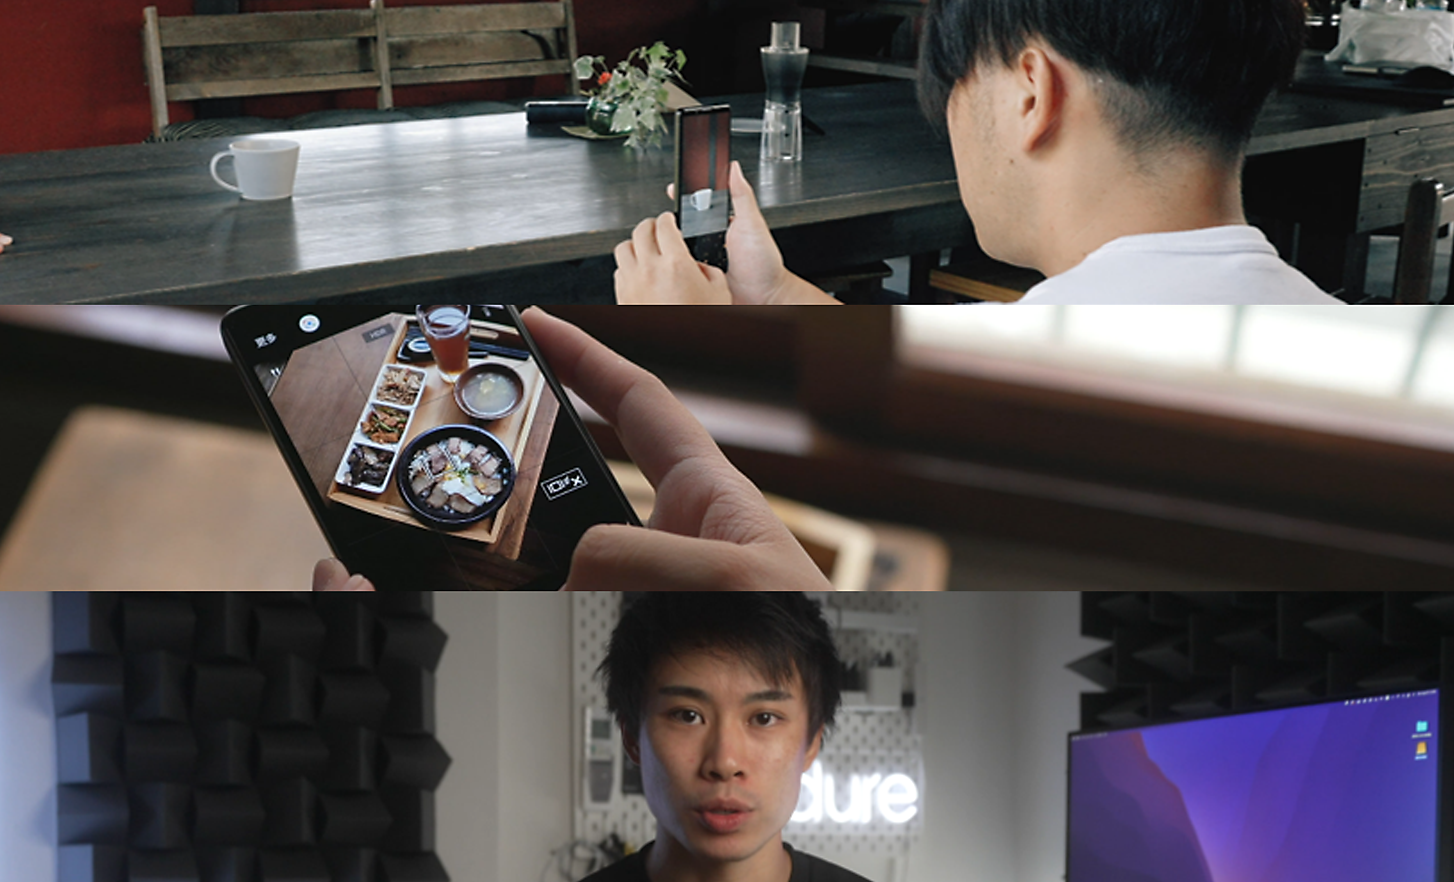 Tri slike: muškarac fotografira Xperia telefonom, osoba gleda sliku na Xperia telefonu, muškarac gleda izravno u kameru